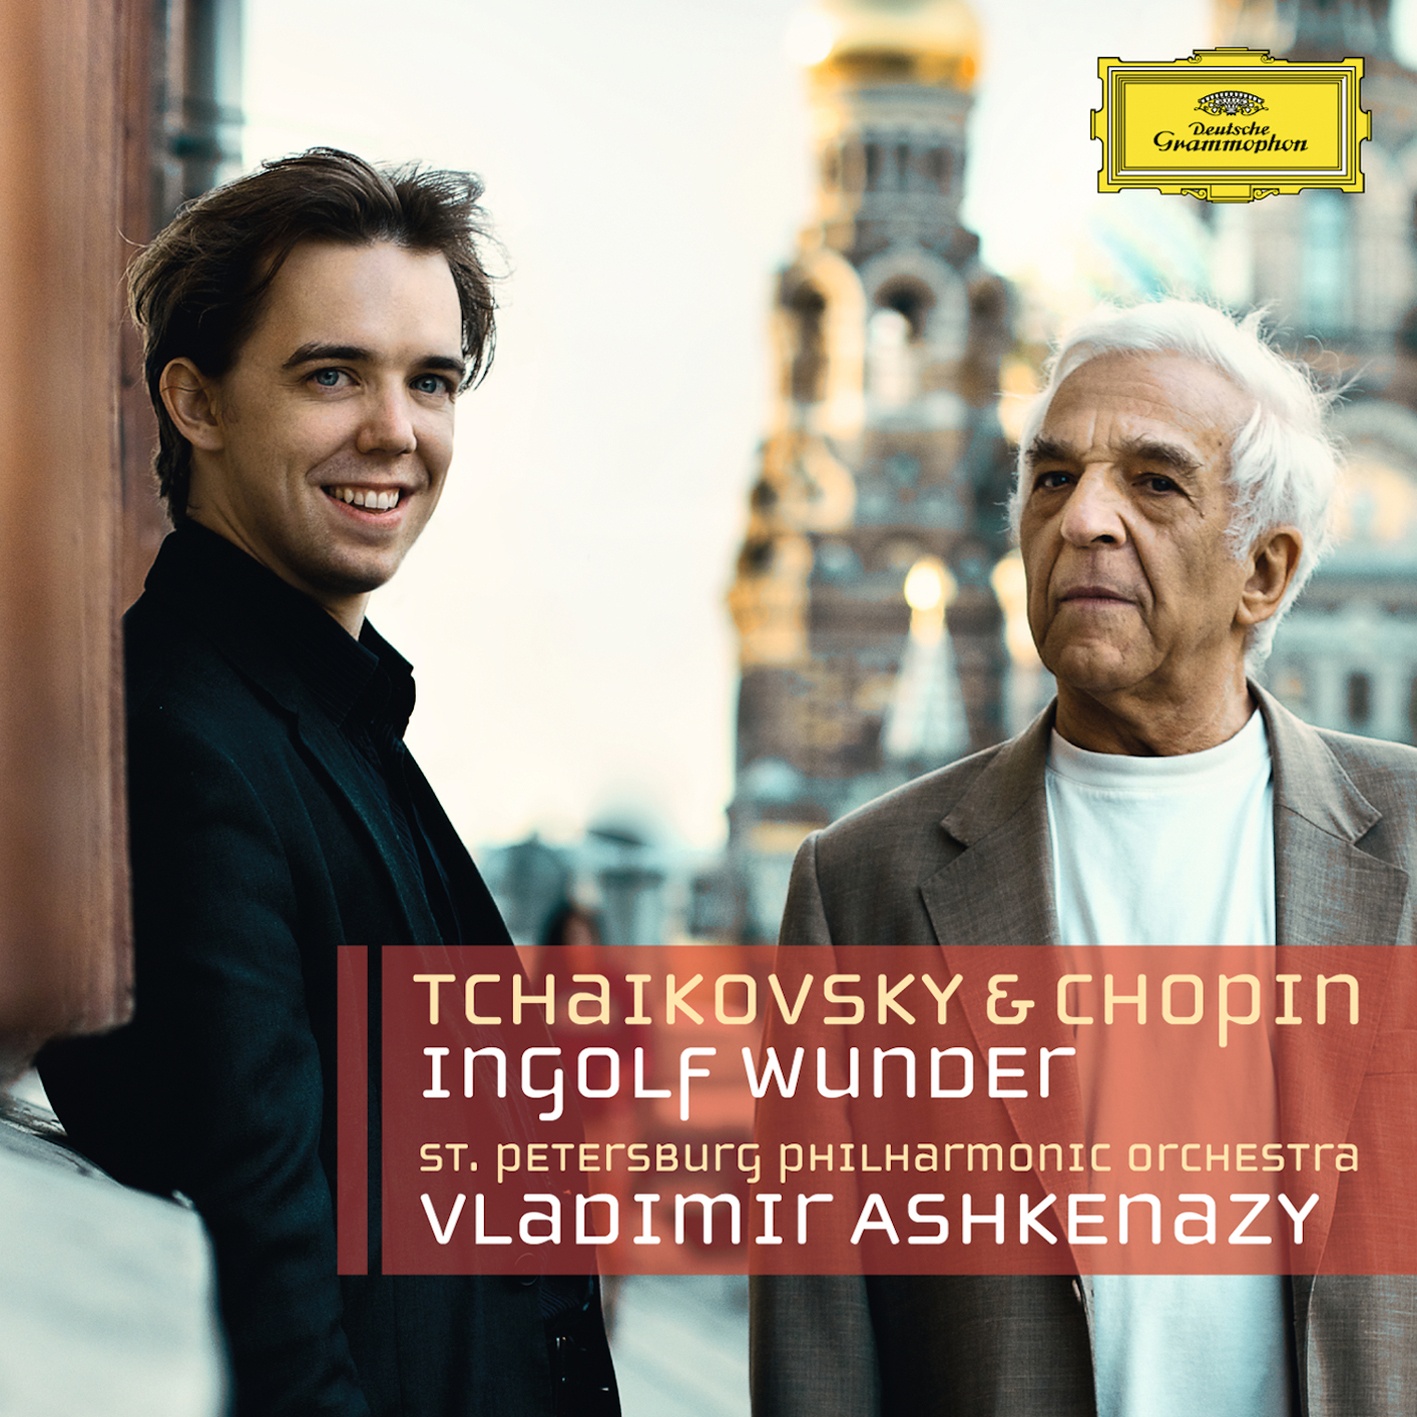 Tchaikovsky: Piano Concerto No.1 In B Flat Minor, Op.23, TH.55 - 1. Allegro non troppo e molto maestoso - Allegro con spirito